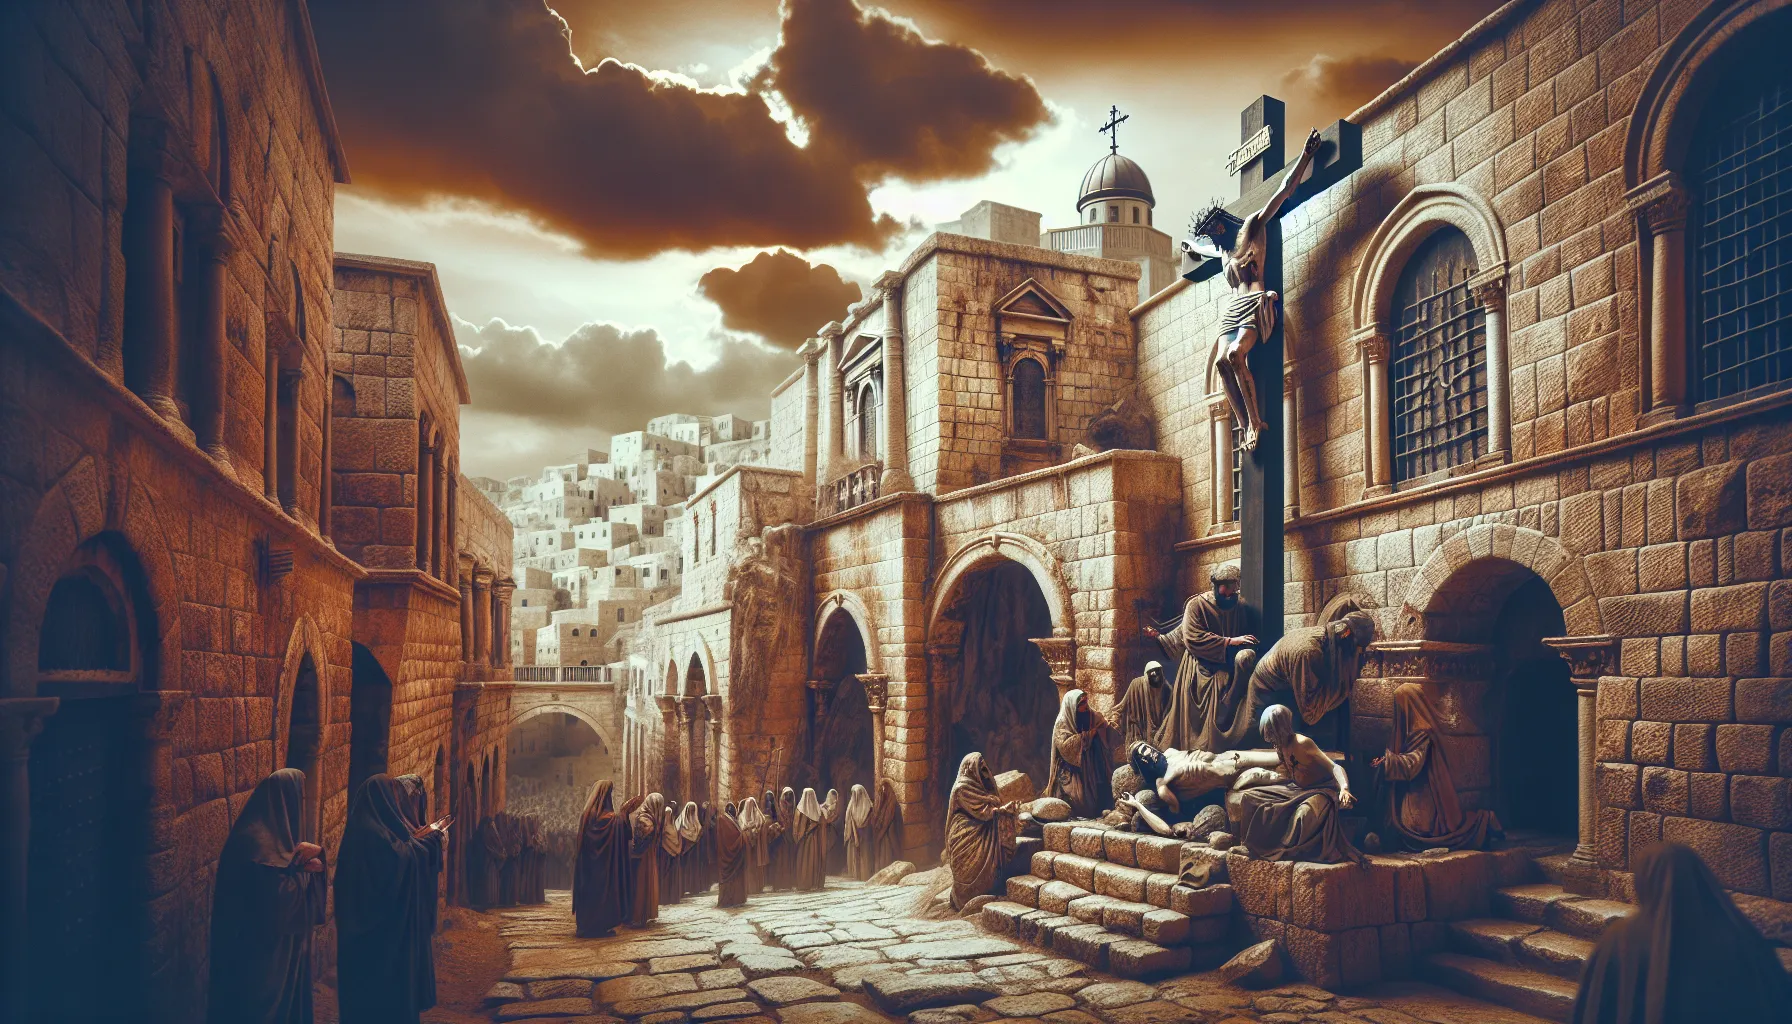 Representación artística de la crucifixión de Jesús de Nazaret en un paisaje de Jerusalén antiguo.